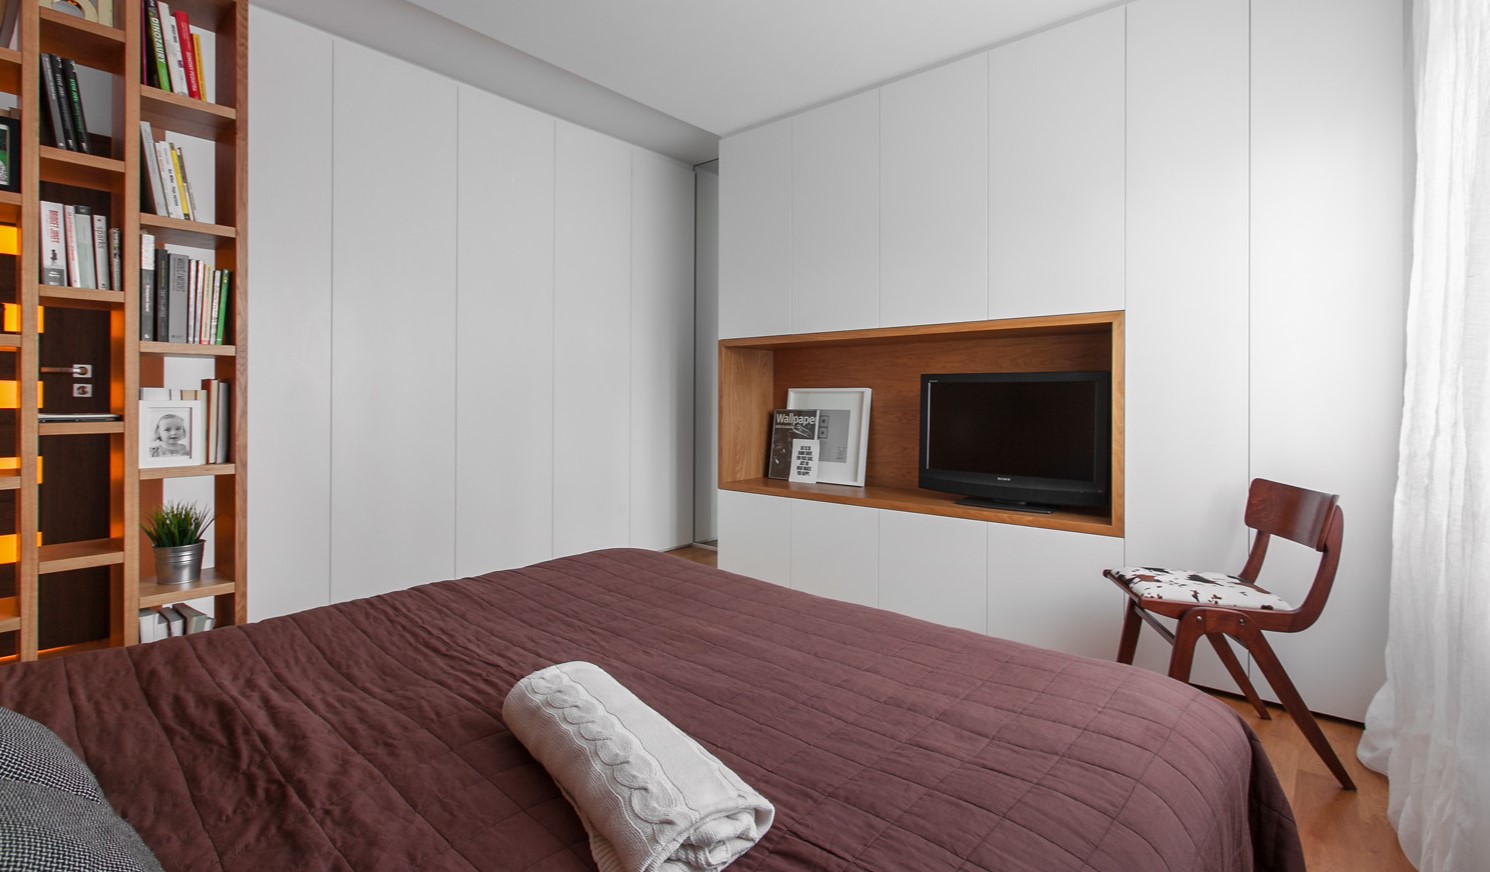 Белые шкафы идеально подходят для спальни в стиле минимализм